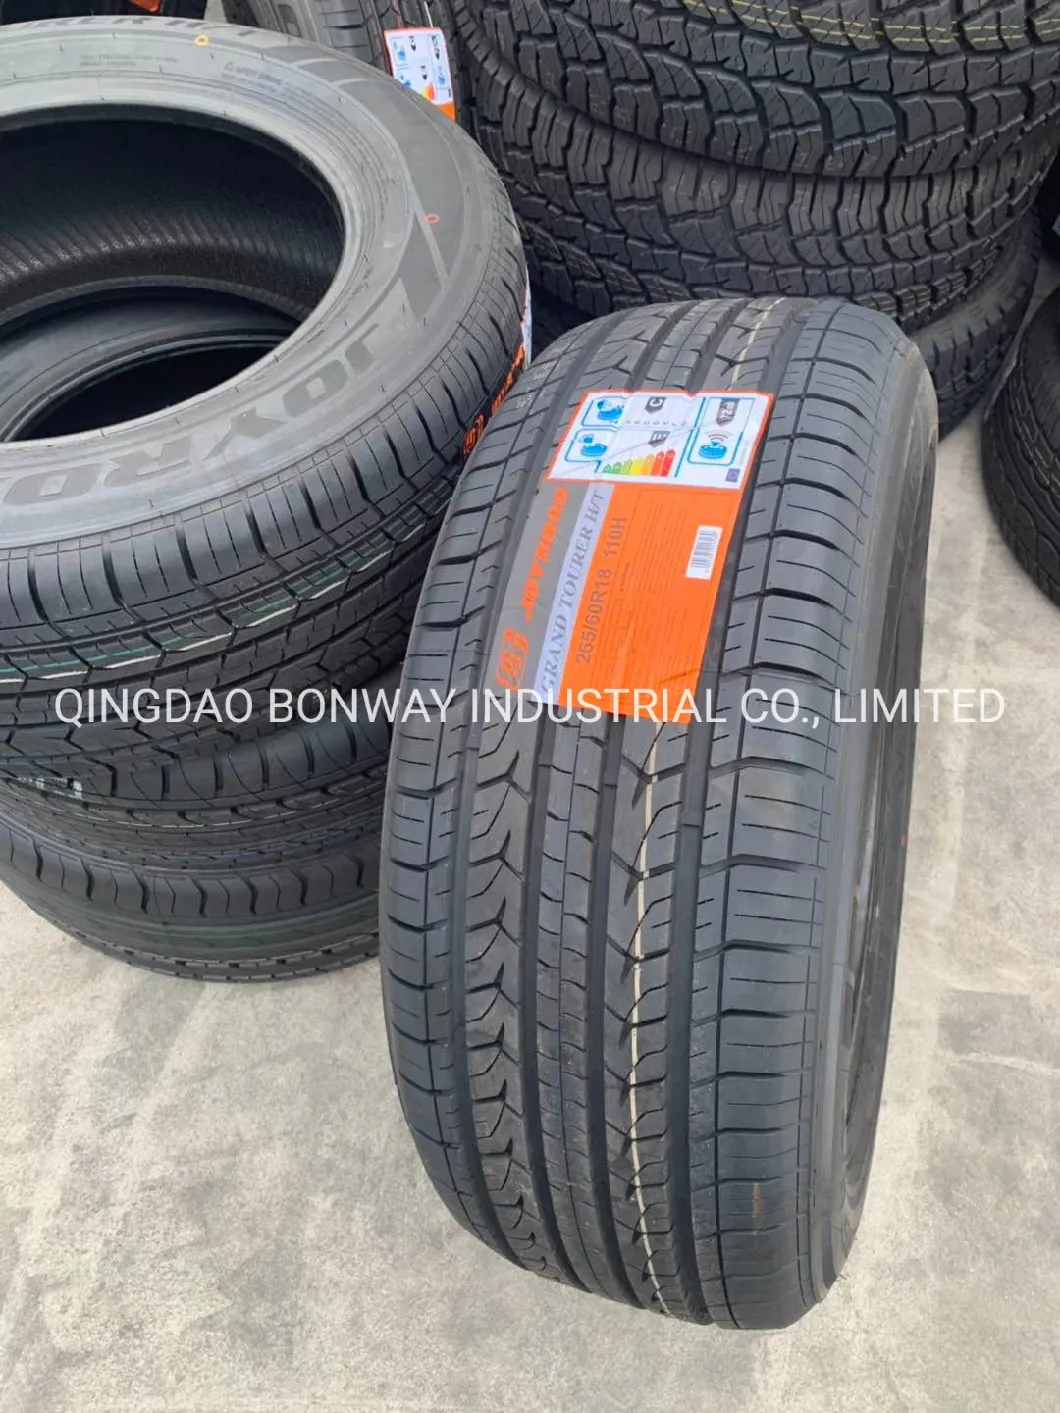 Joyroad/ Centara Brand High Quality Car Tires PCR Tyre 185/70r14 195/70r14 195/65r15 205/55r16